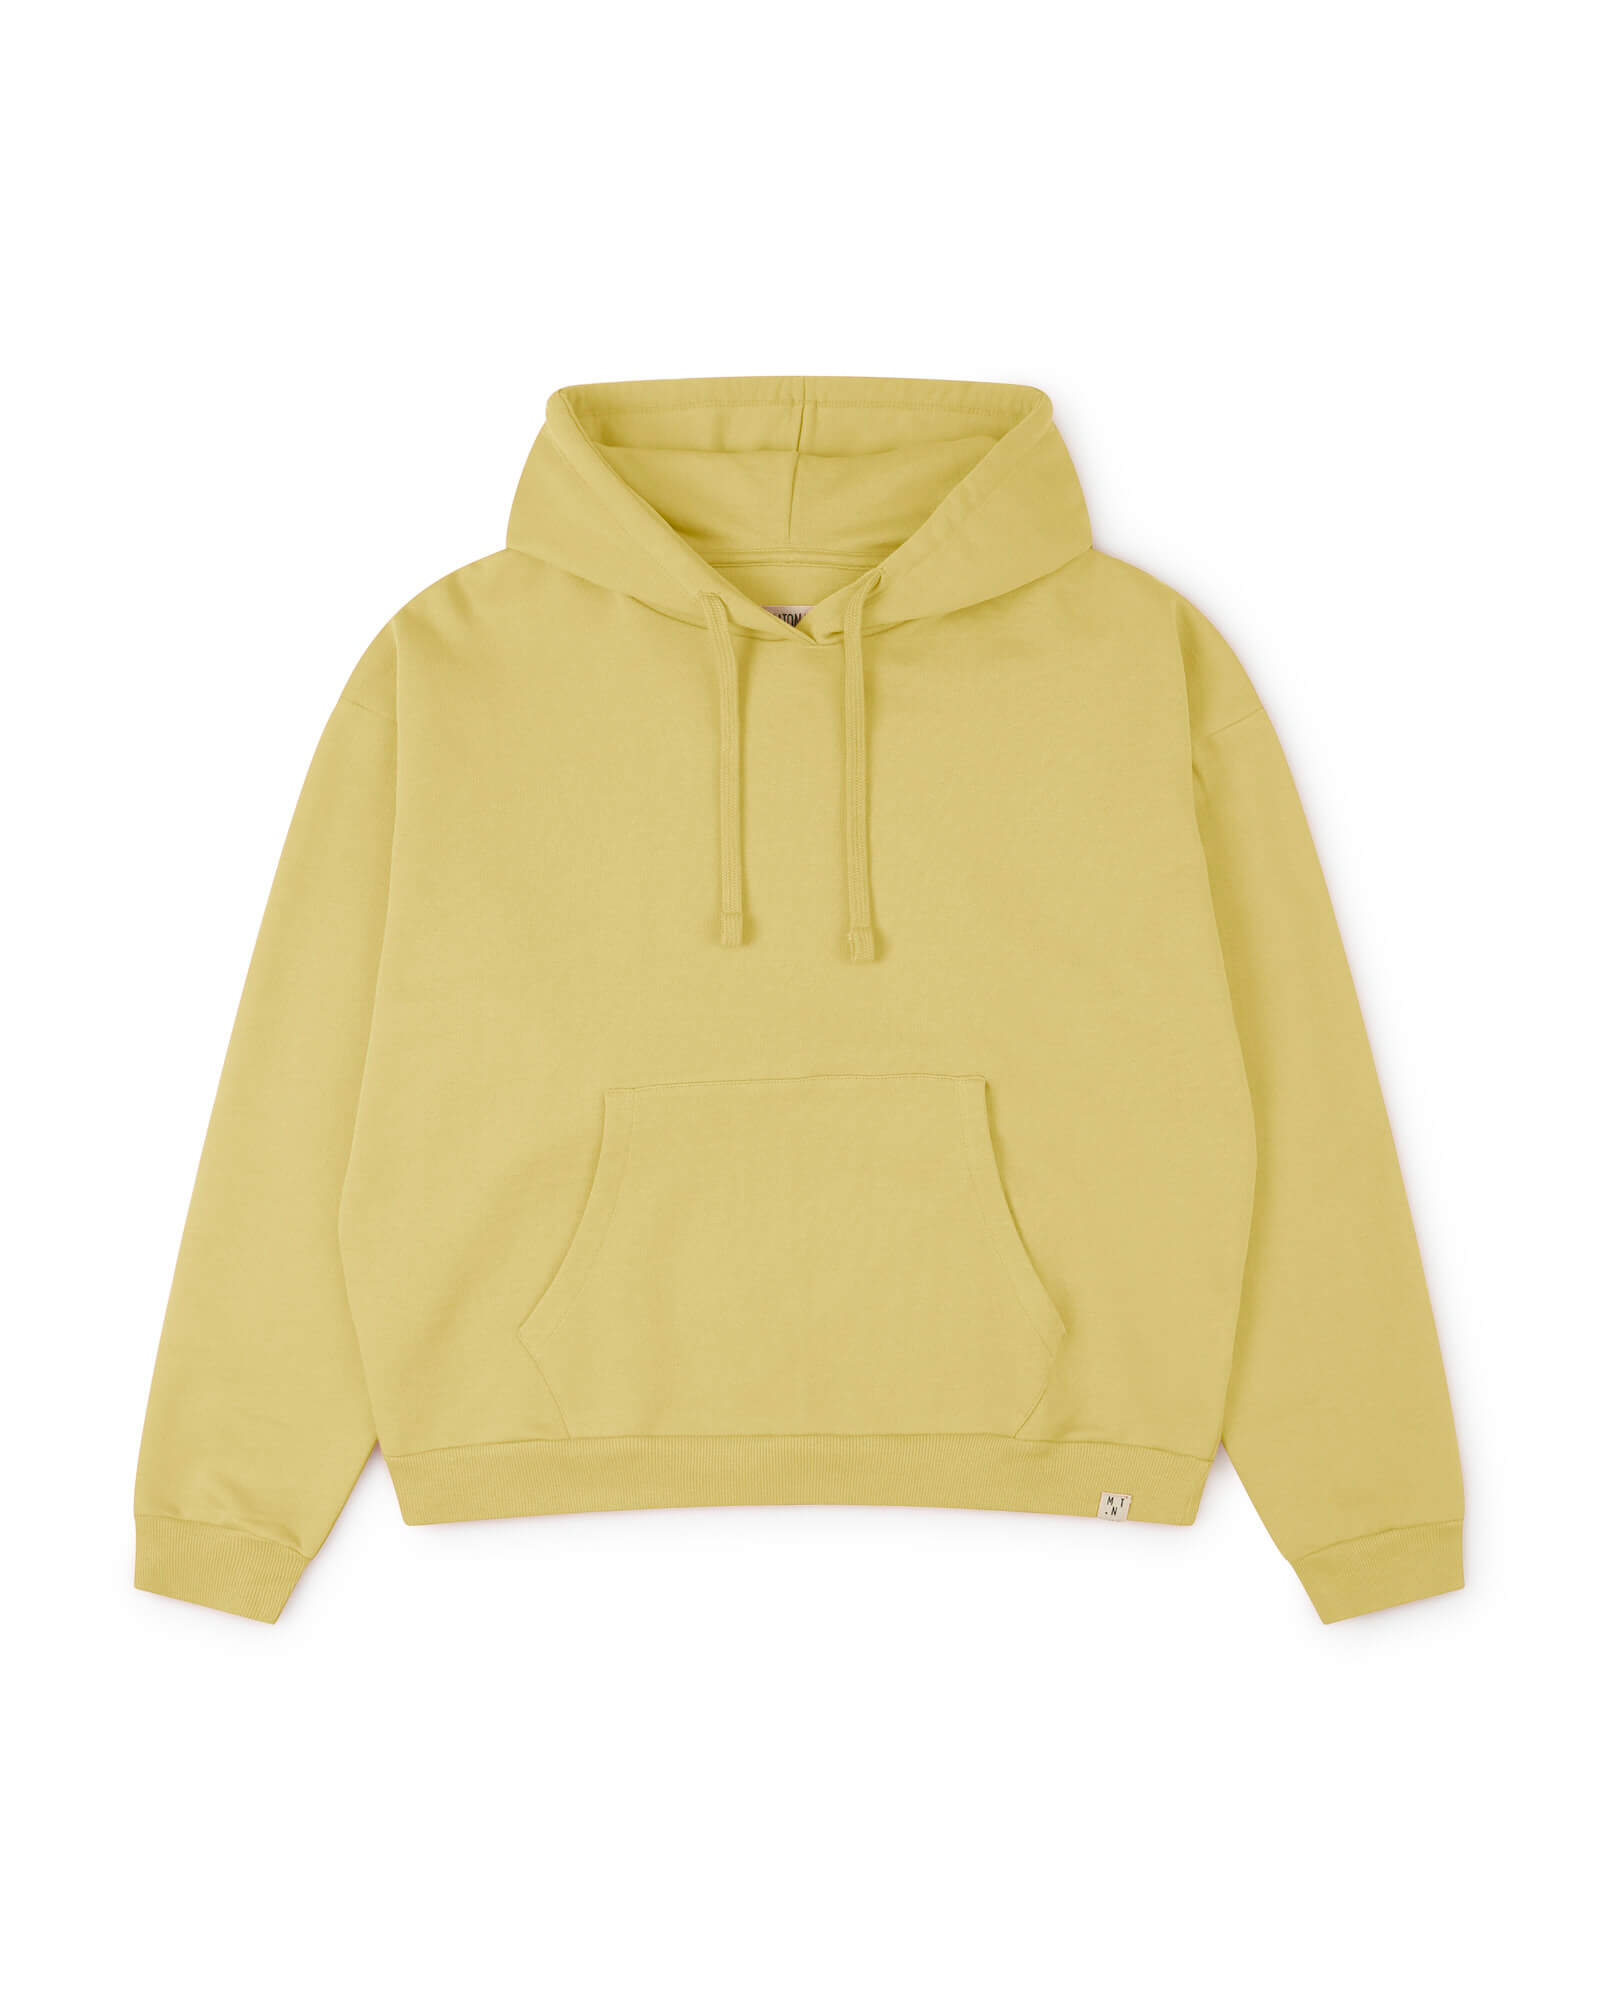 Yellow hoodie citrona made of 100% cotton from Matona